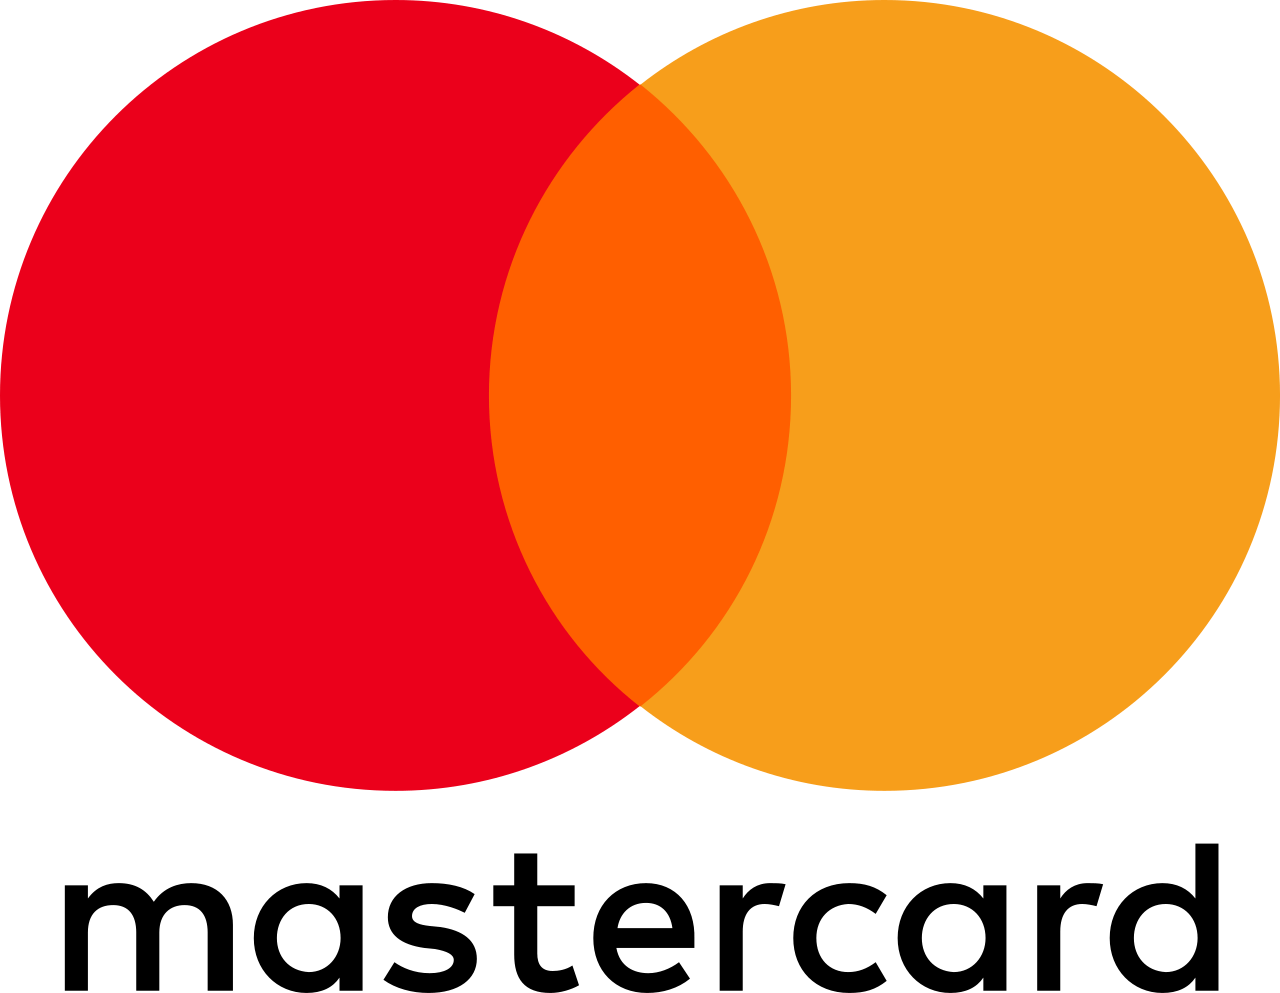 mastercard_logo.png